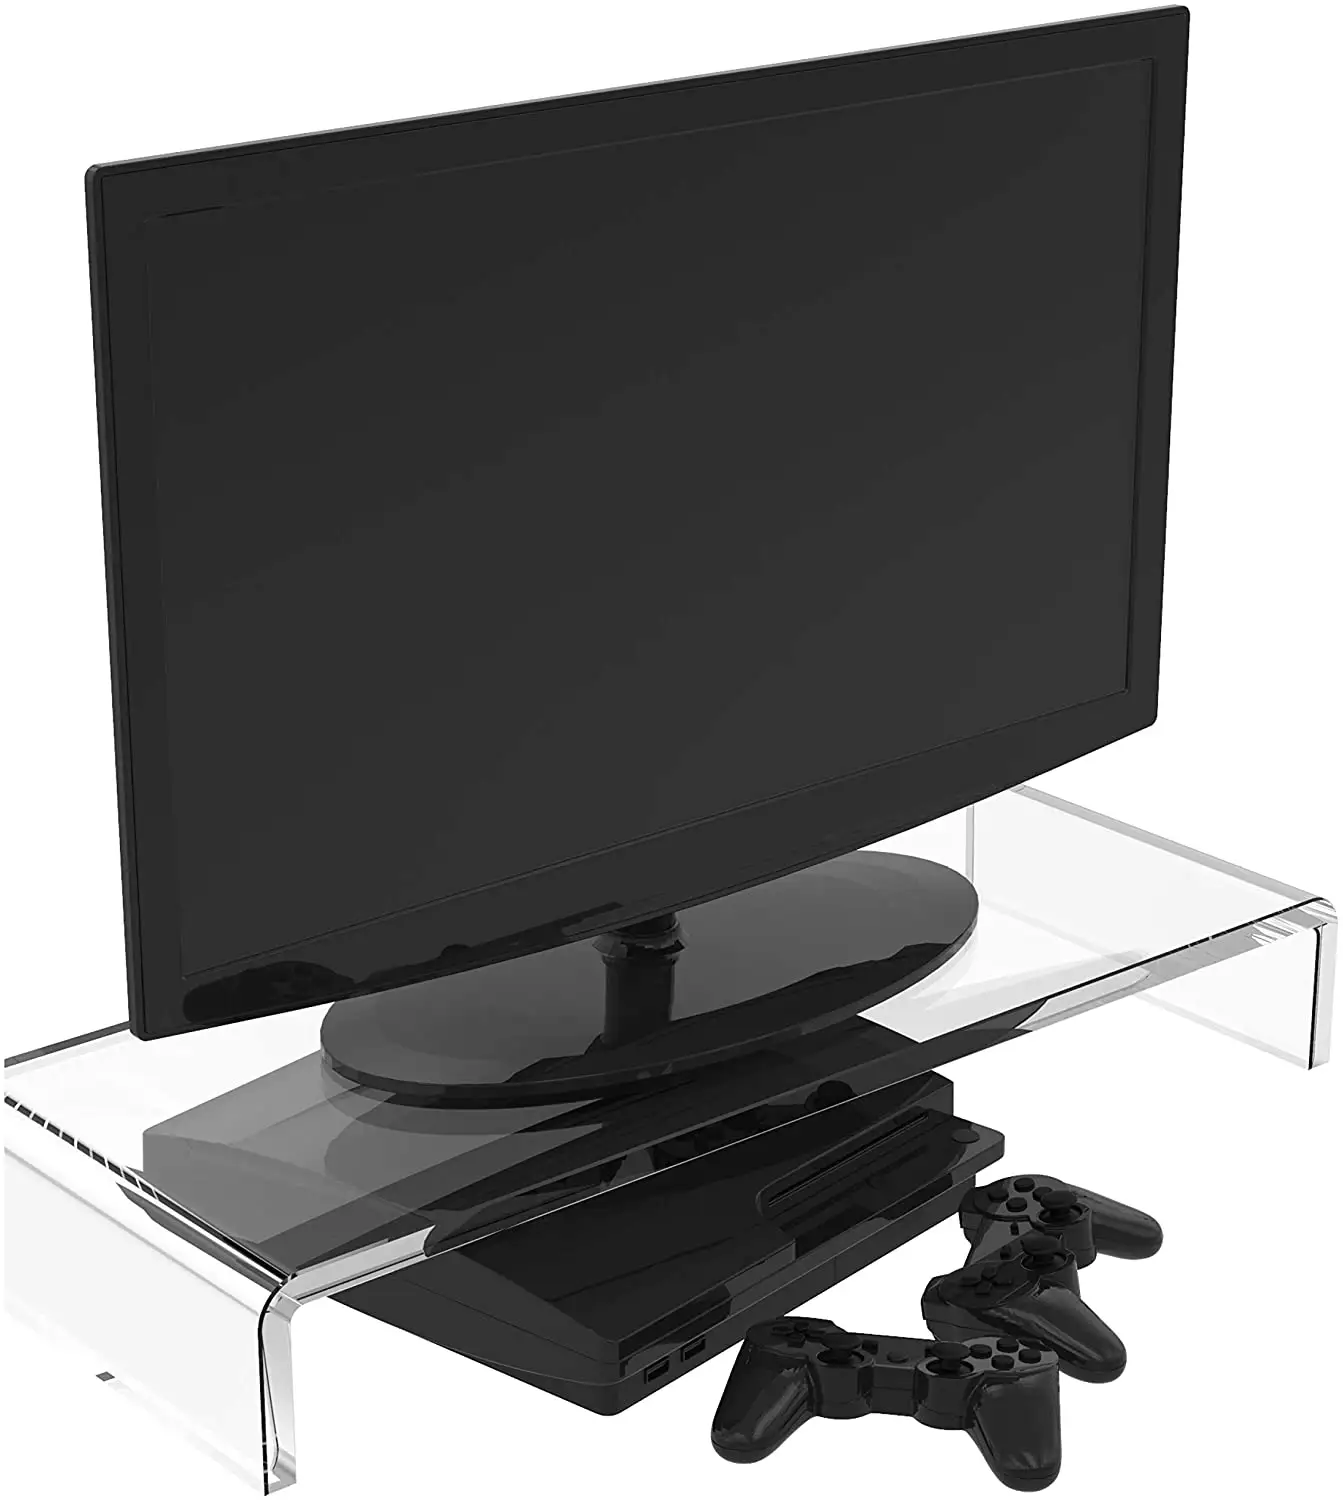 ラップトップスクリーンタブレットTVLcd用の自立型台座ルーサイトアクリルコンピューターモニタースタンドホルダー